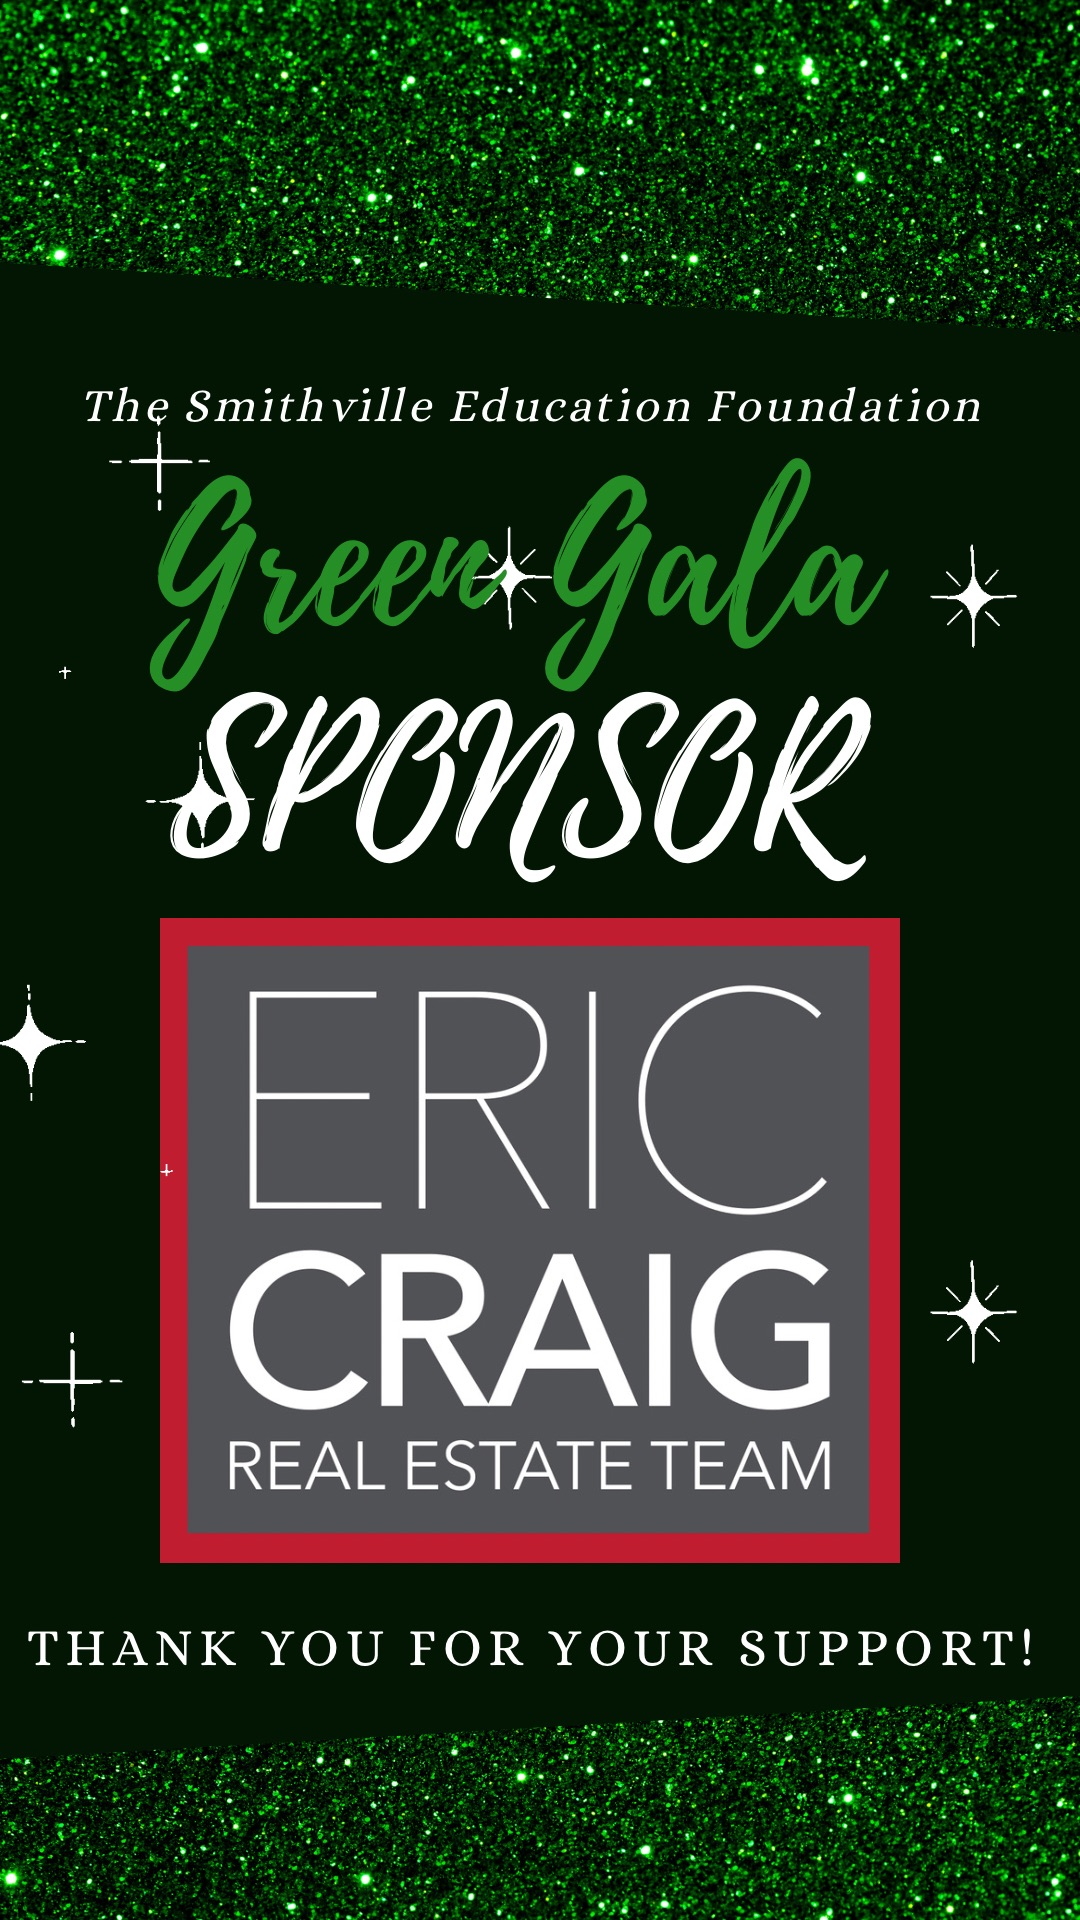 Eric Craig Real Estate